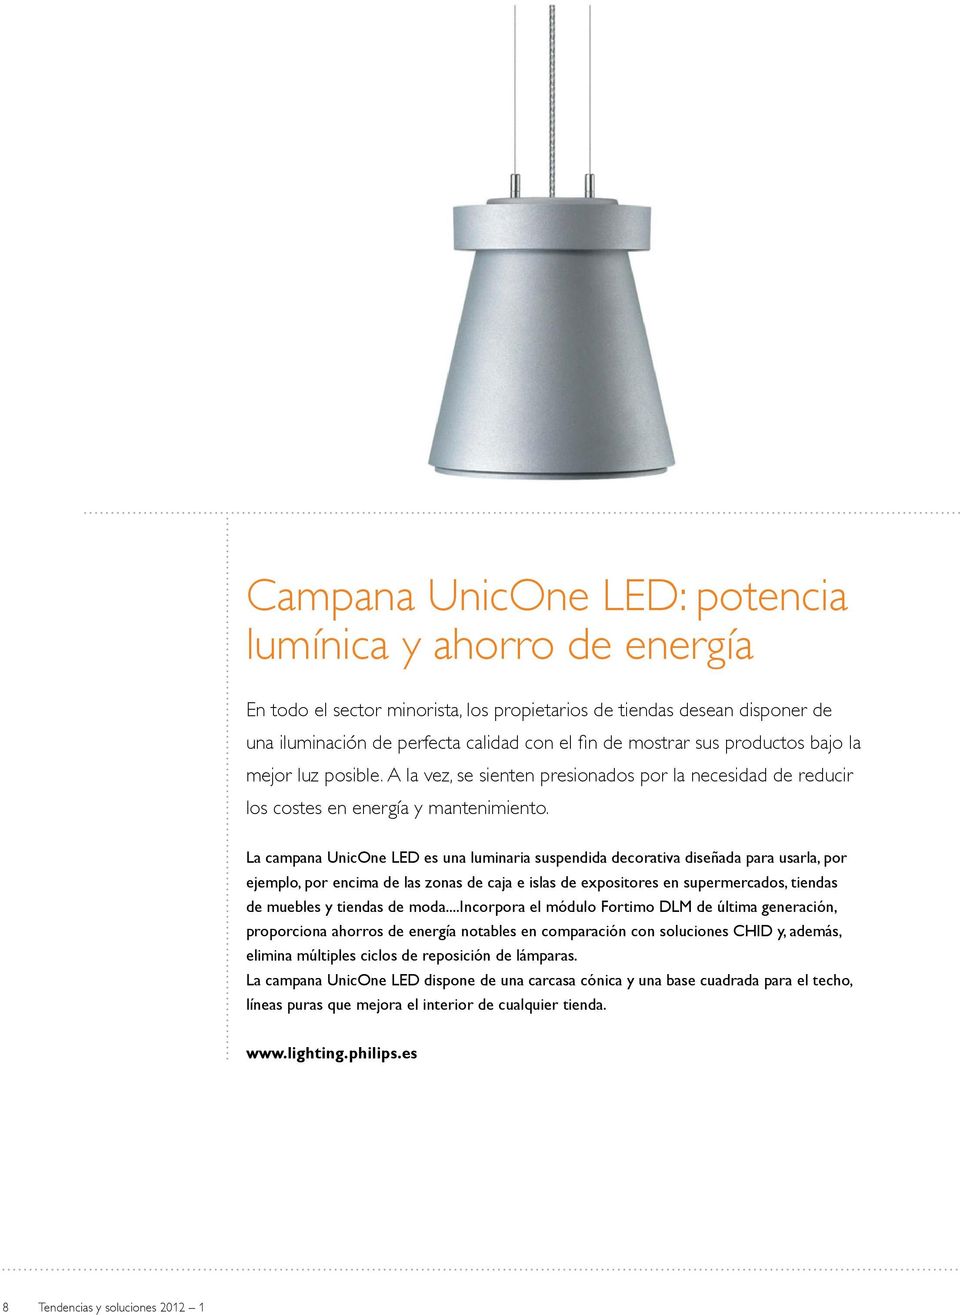 La campana UnicOne LED es una luminaria suspendida decorativa diseñada para usarla, por ejemplo, por encima de las zonas de caja e islas de expositores en supermercados, tiendas de muebles y tiendas